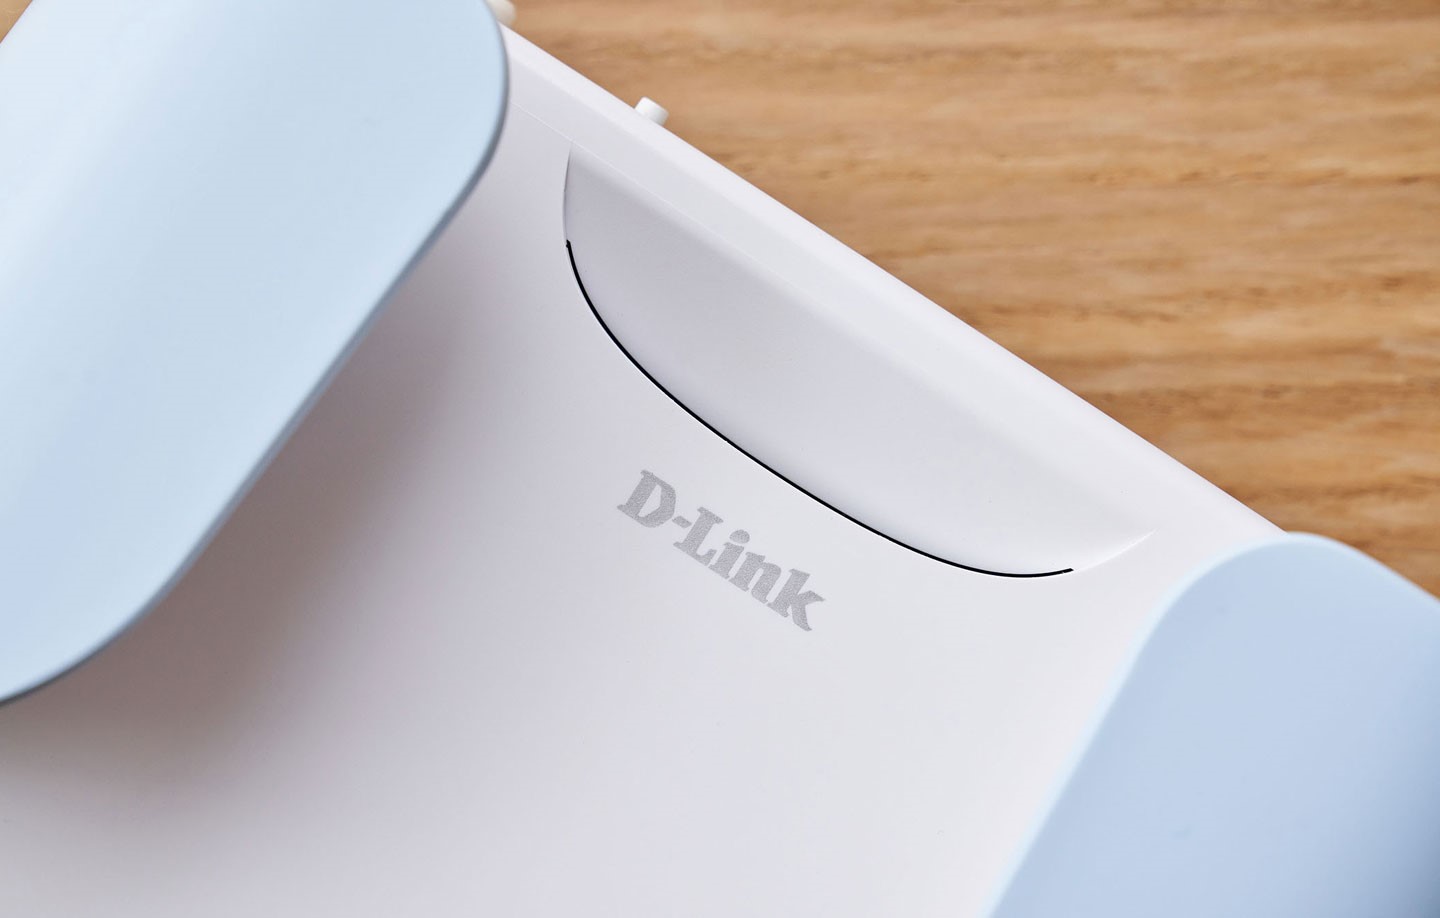 銀色的 D-Link Logo 在白色機身上起到畫龍點睛的效果，出風口處則採微笑曲線的開口，與機身整體的流線計相呼應。